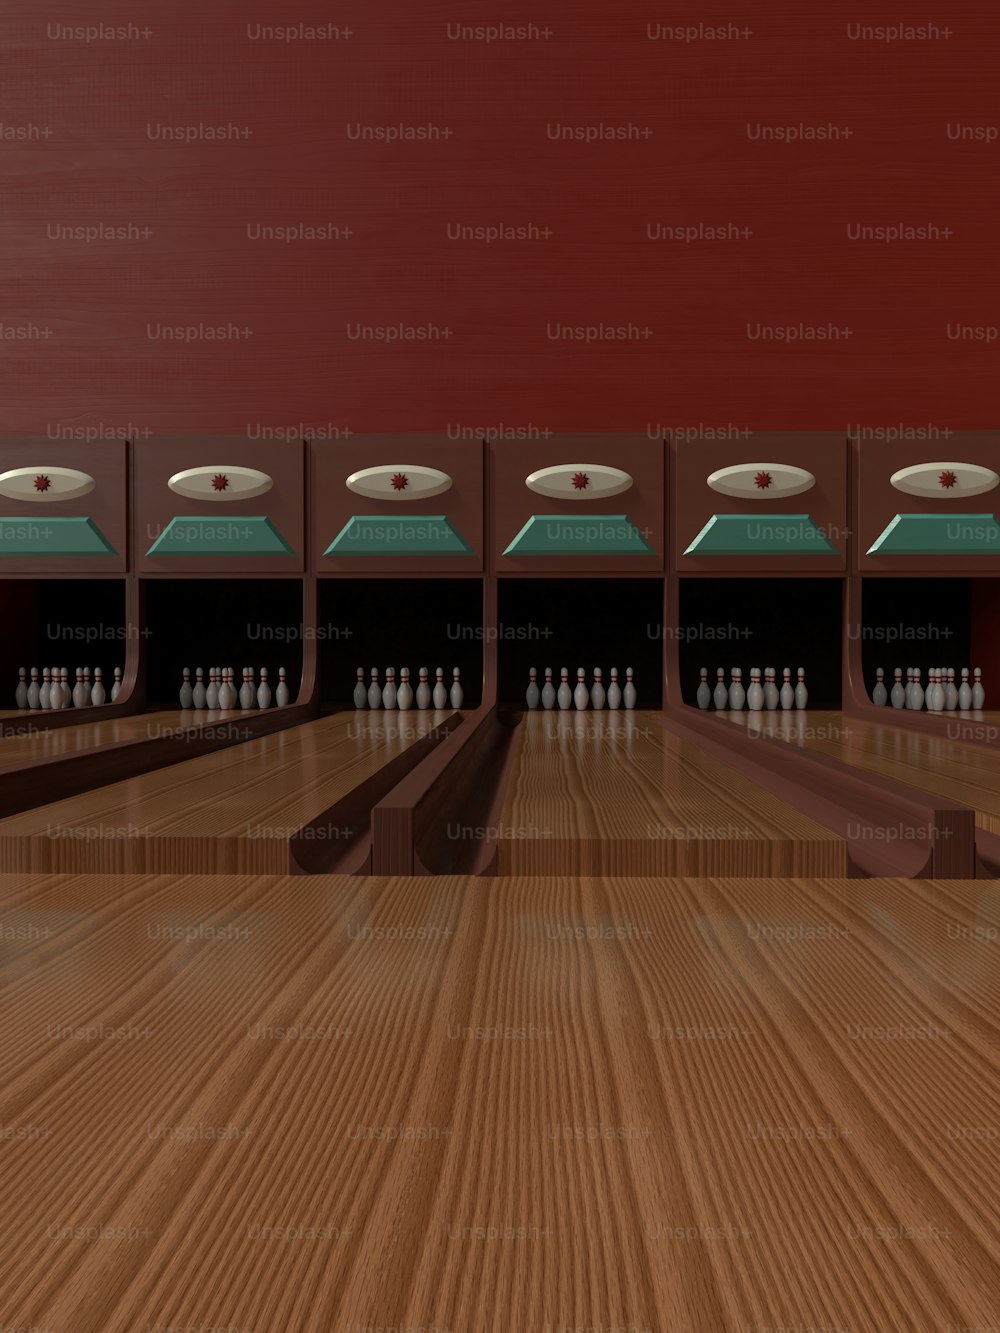 eine Reihe von Bowlingkugeln, die auf einem Holzboden sitzen